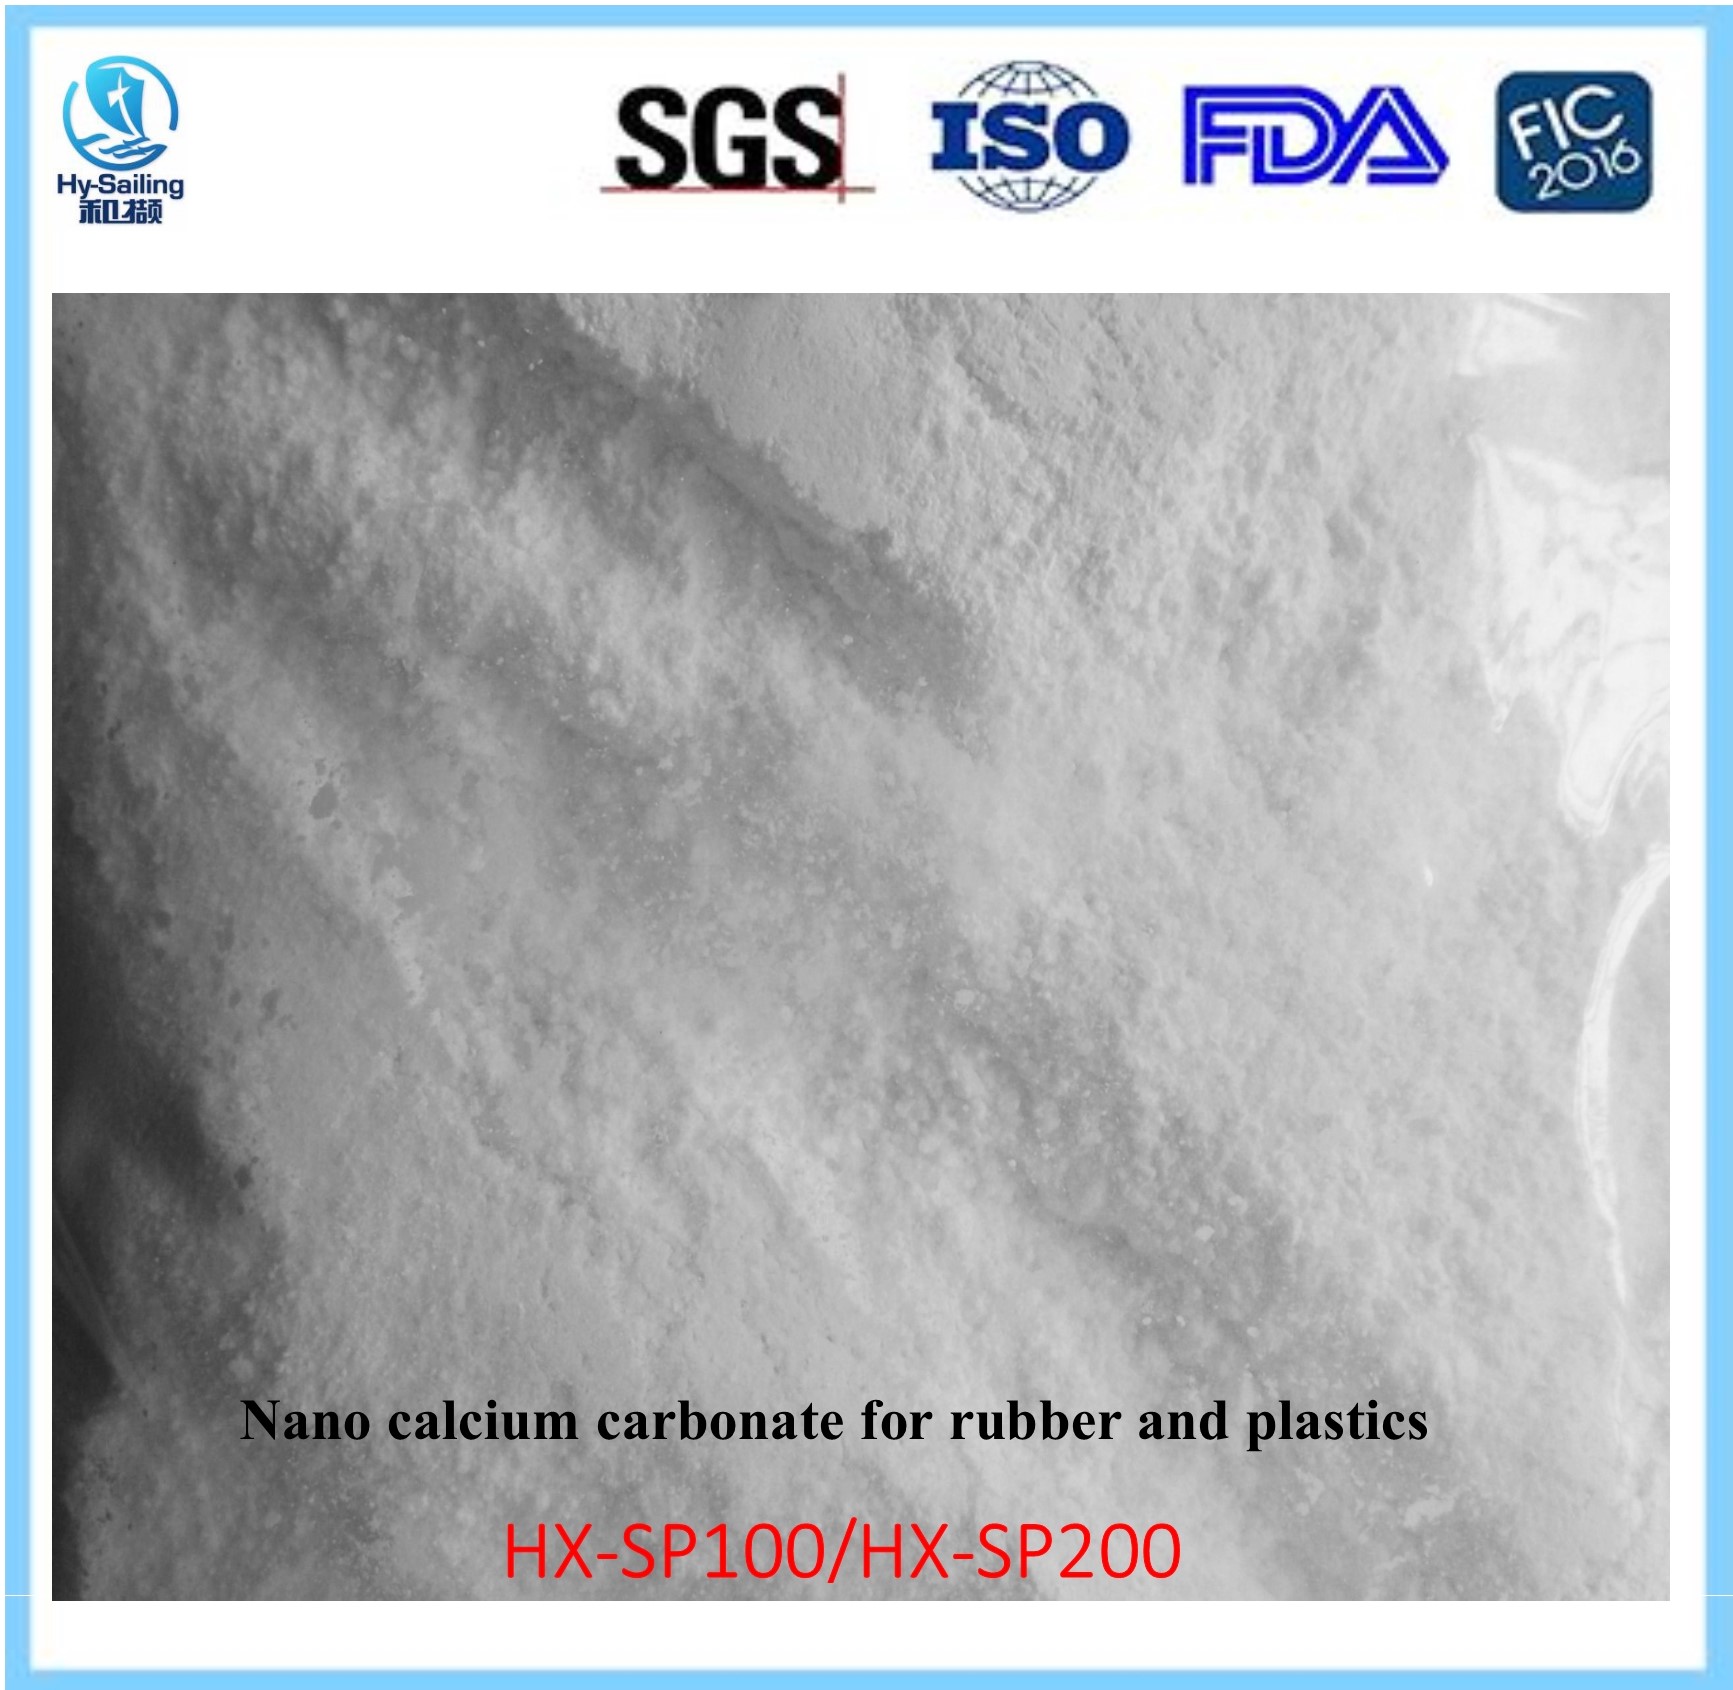 Nano calcium carbonate for rubber and plastics(CCR)